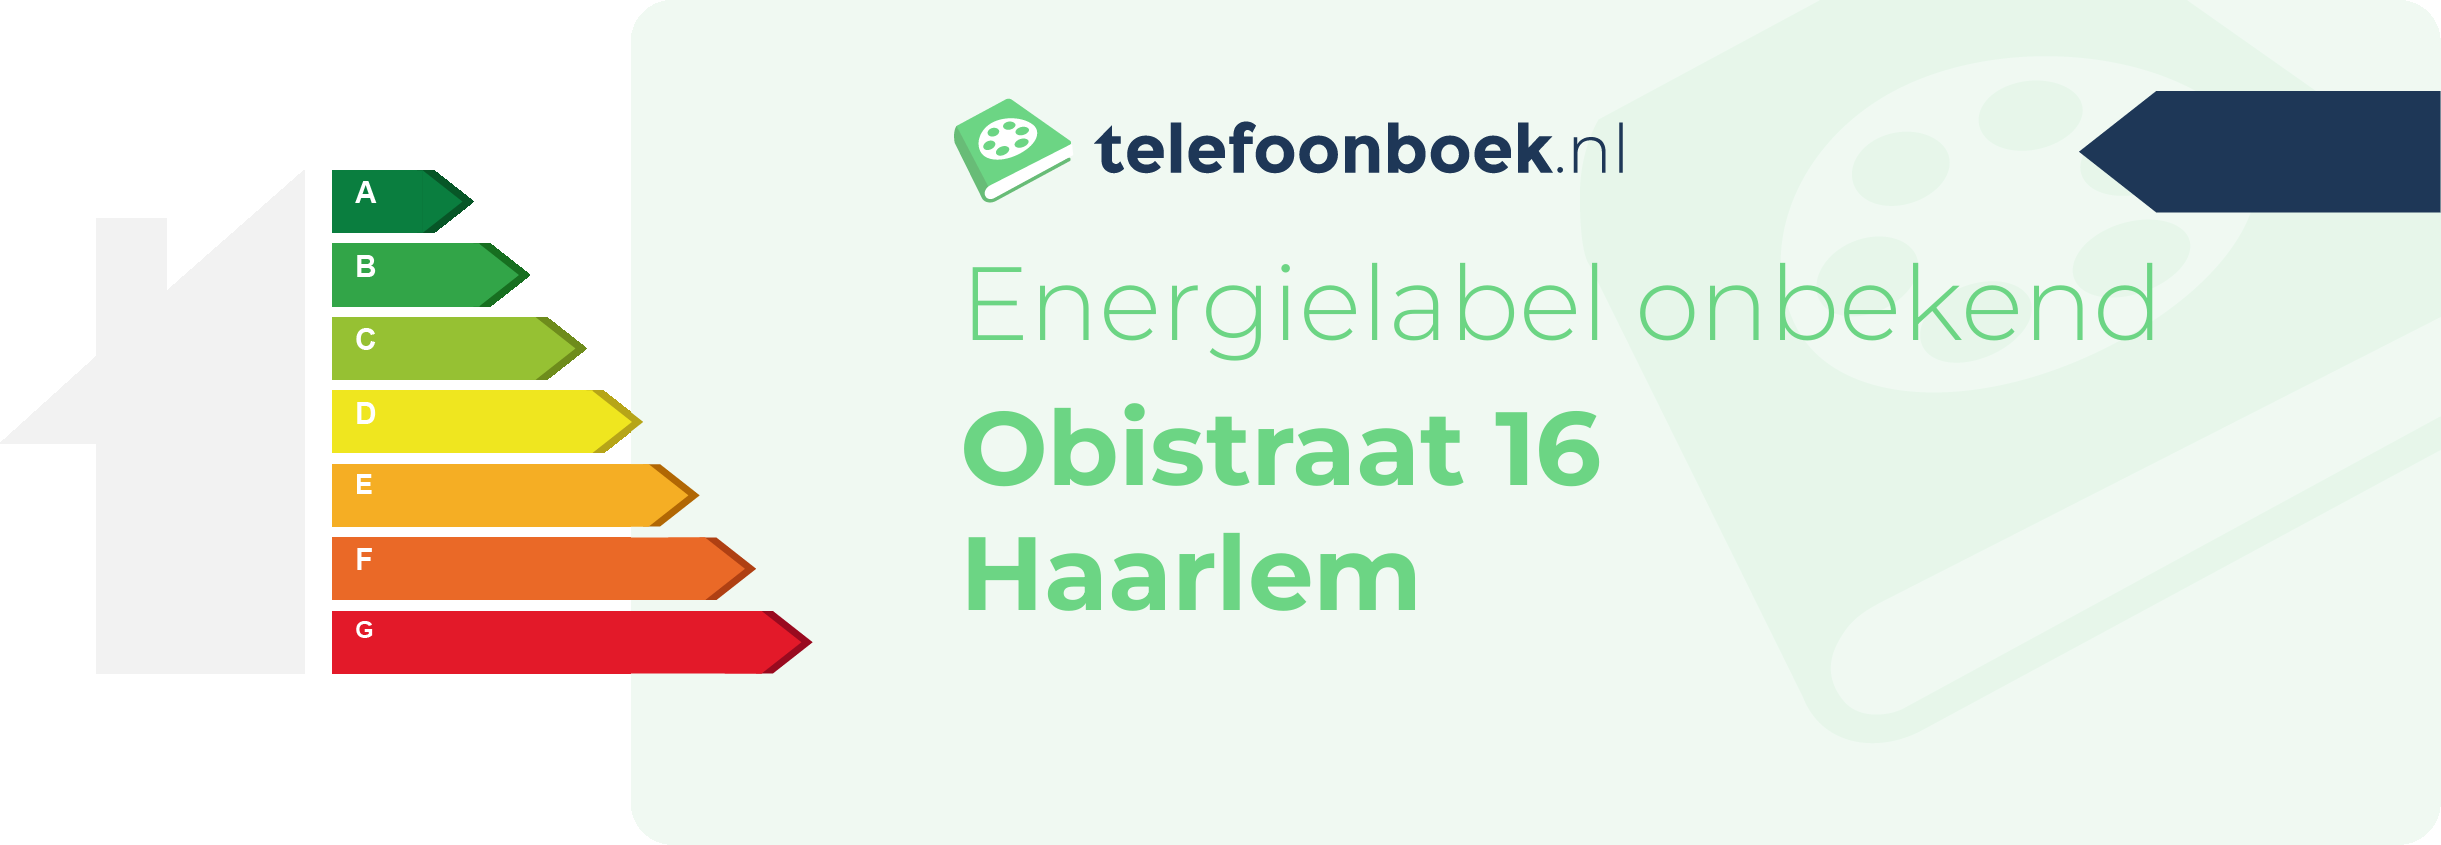 Energielabel Obistraat 16 Haarlem